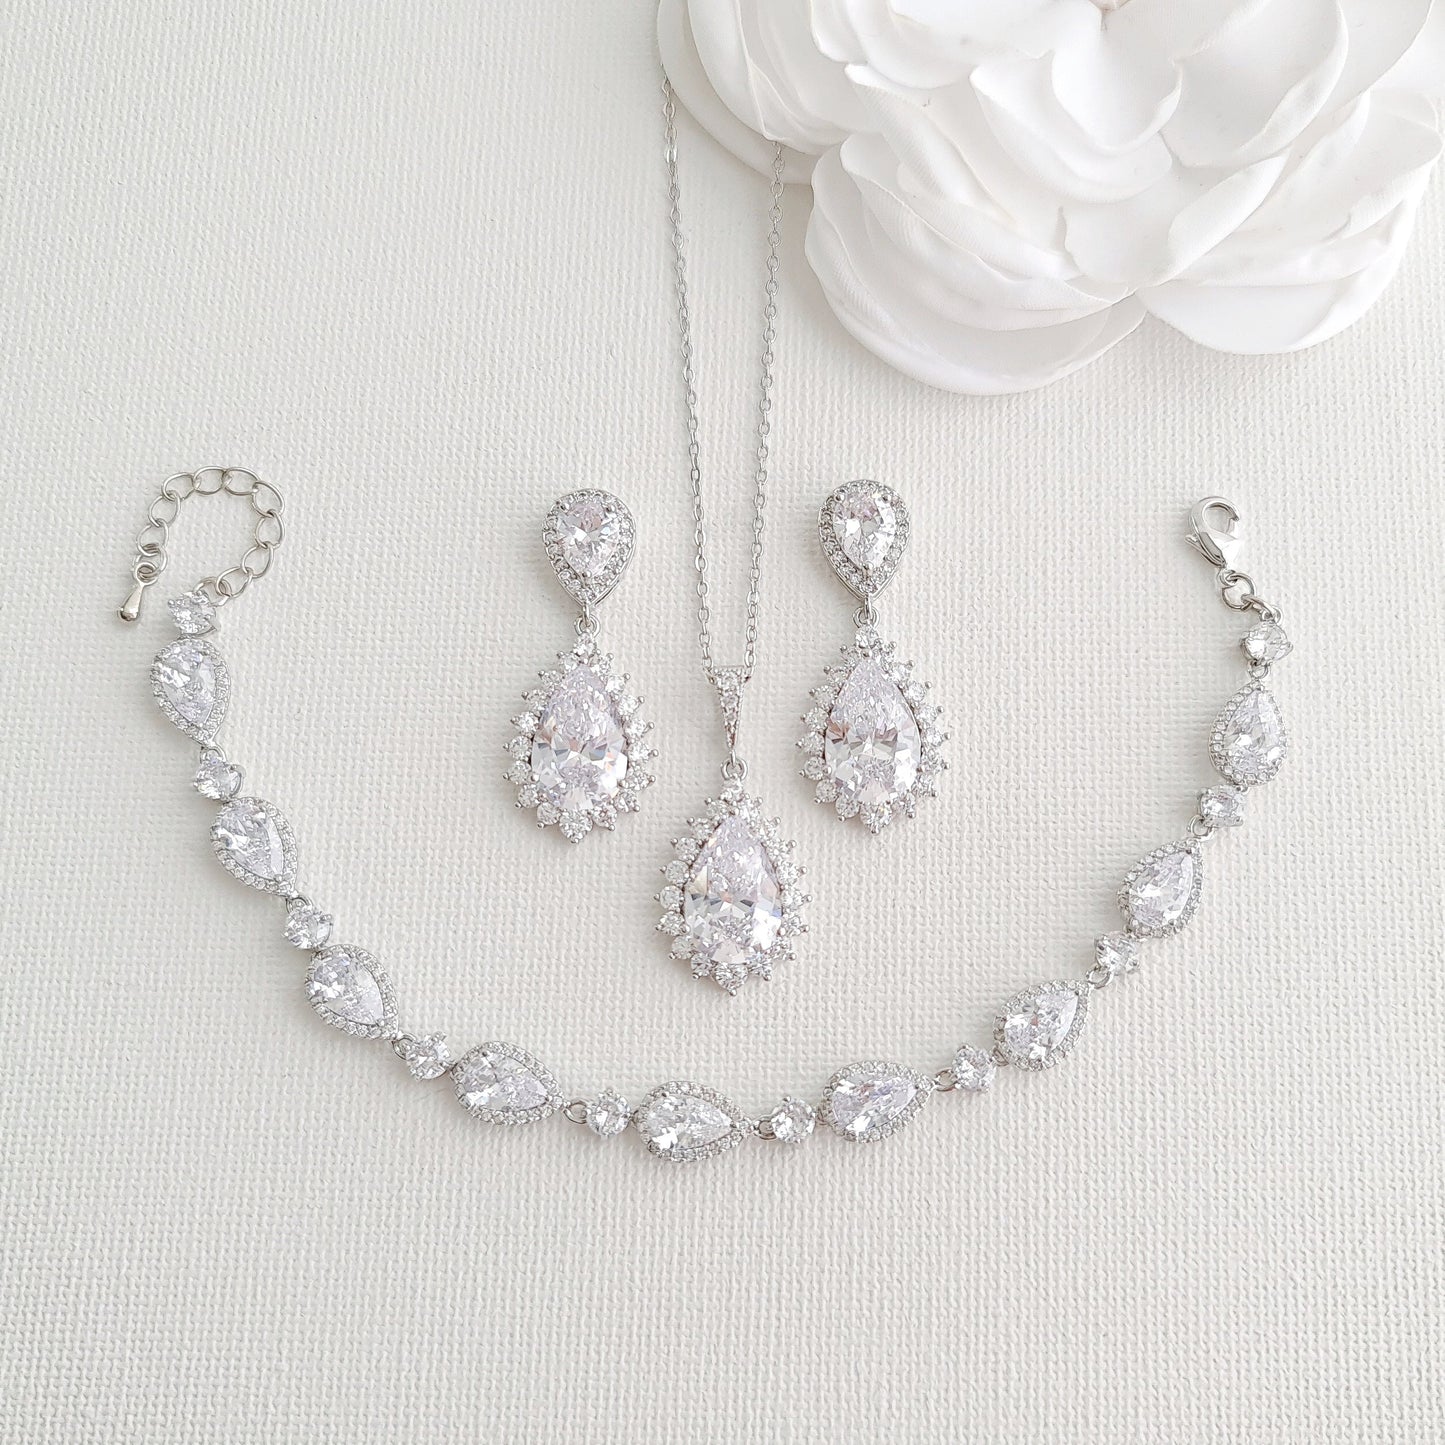 silver earring necklace bracelet set